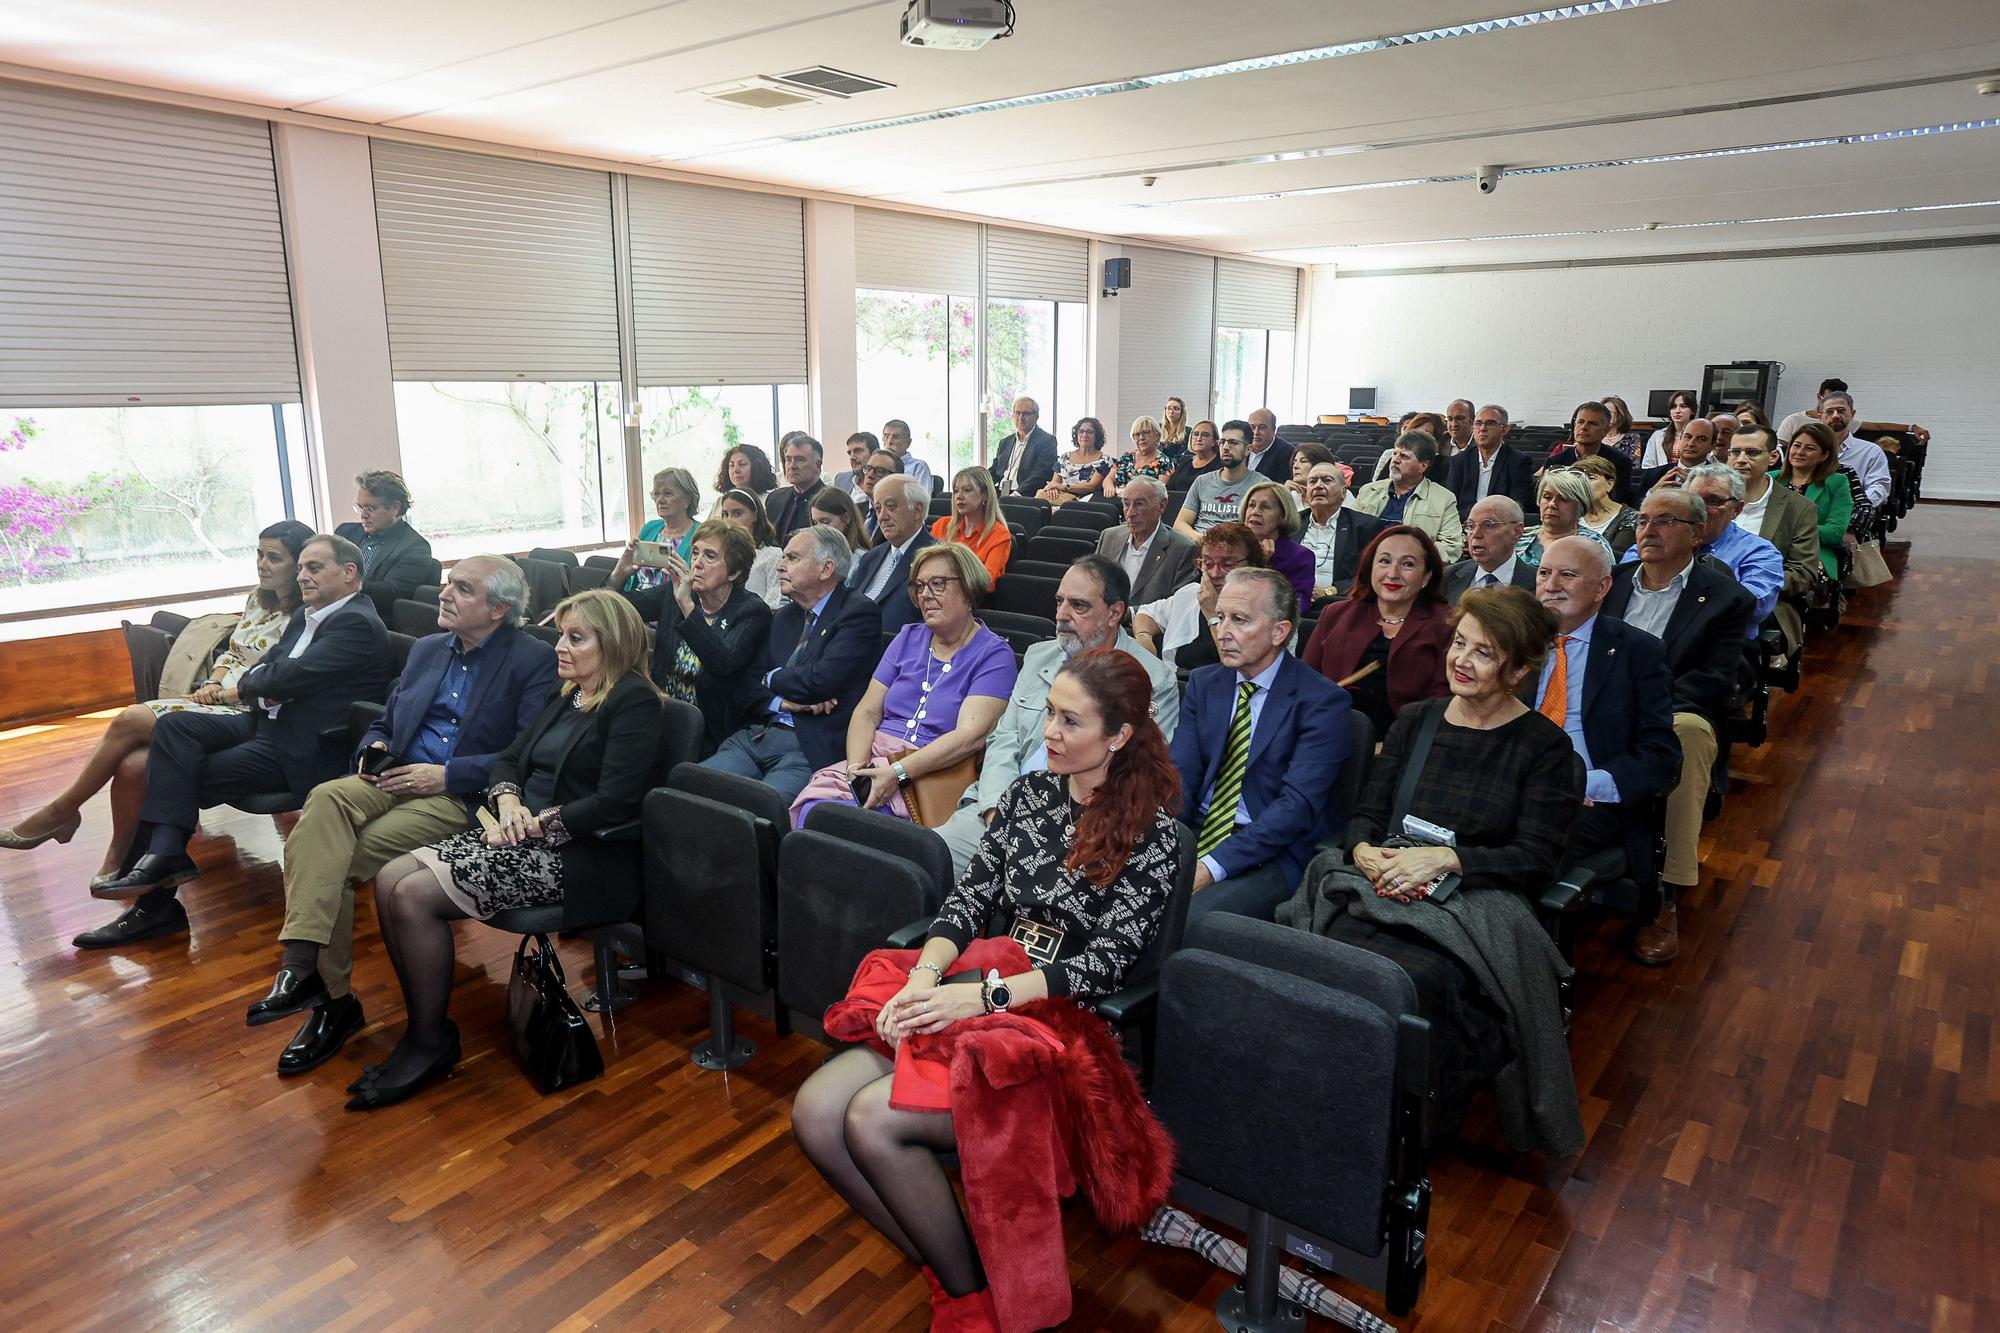 El Colegio de Docentes y Licenciados conmemora sus 80 años en Alicante